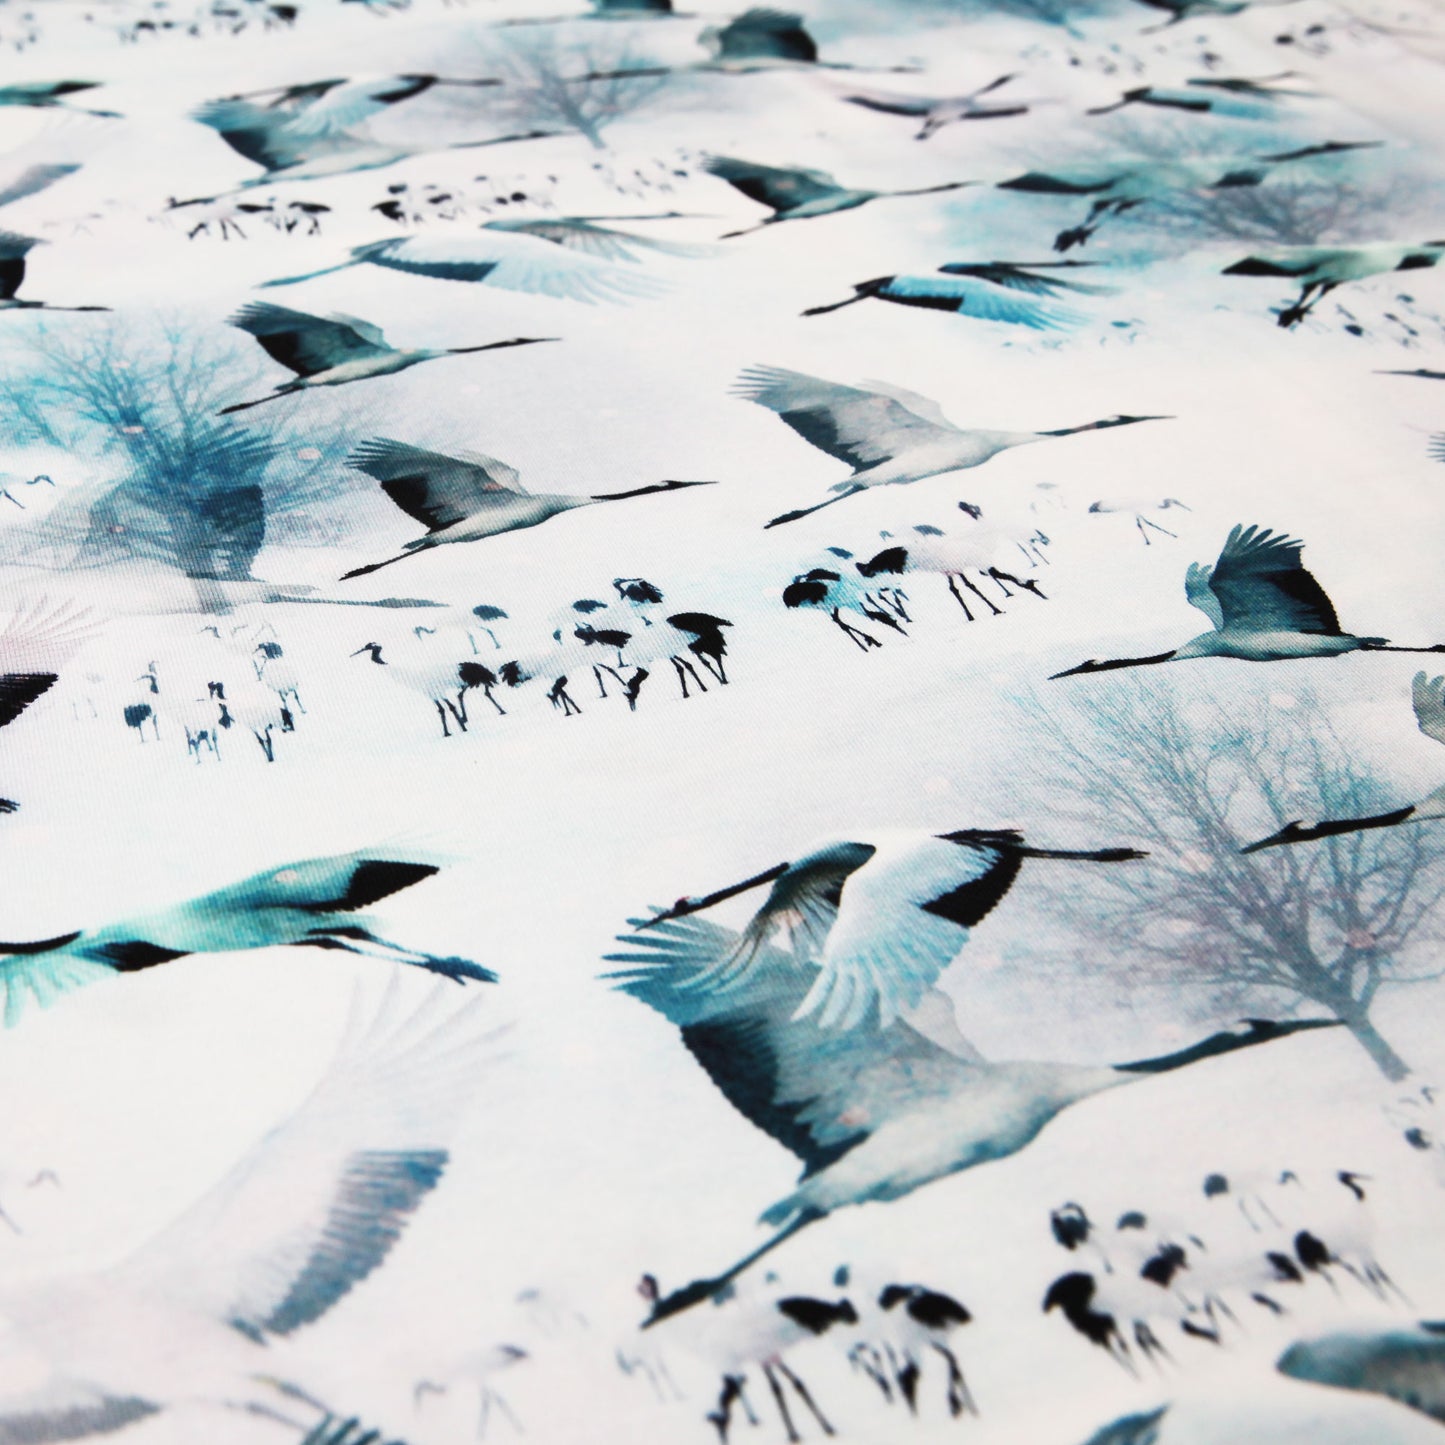 Baumwolljersey "Kraniche - Zugvögel auf weiß / blau" - Jersey StoffJersey BedrucktStoffe KudellinoStoffe Kudellino